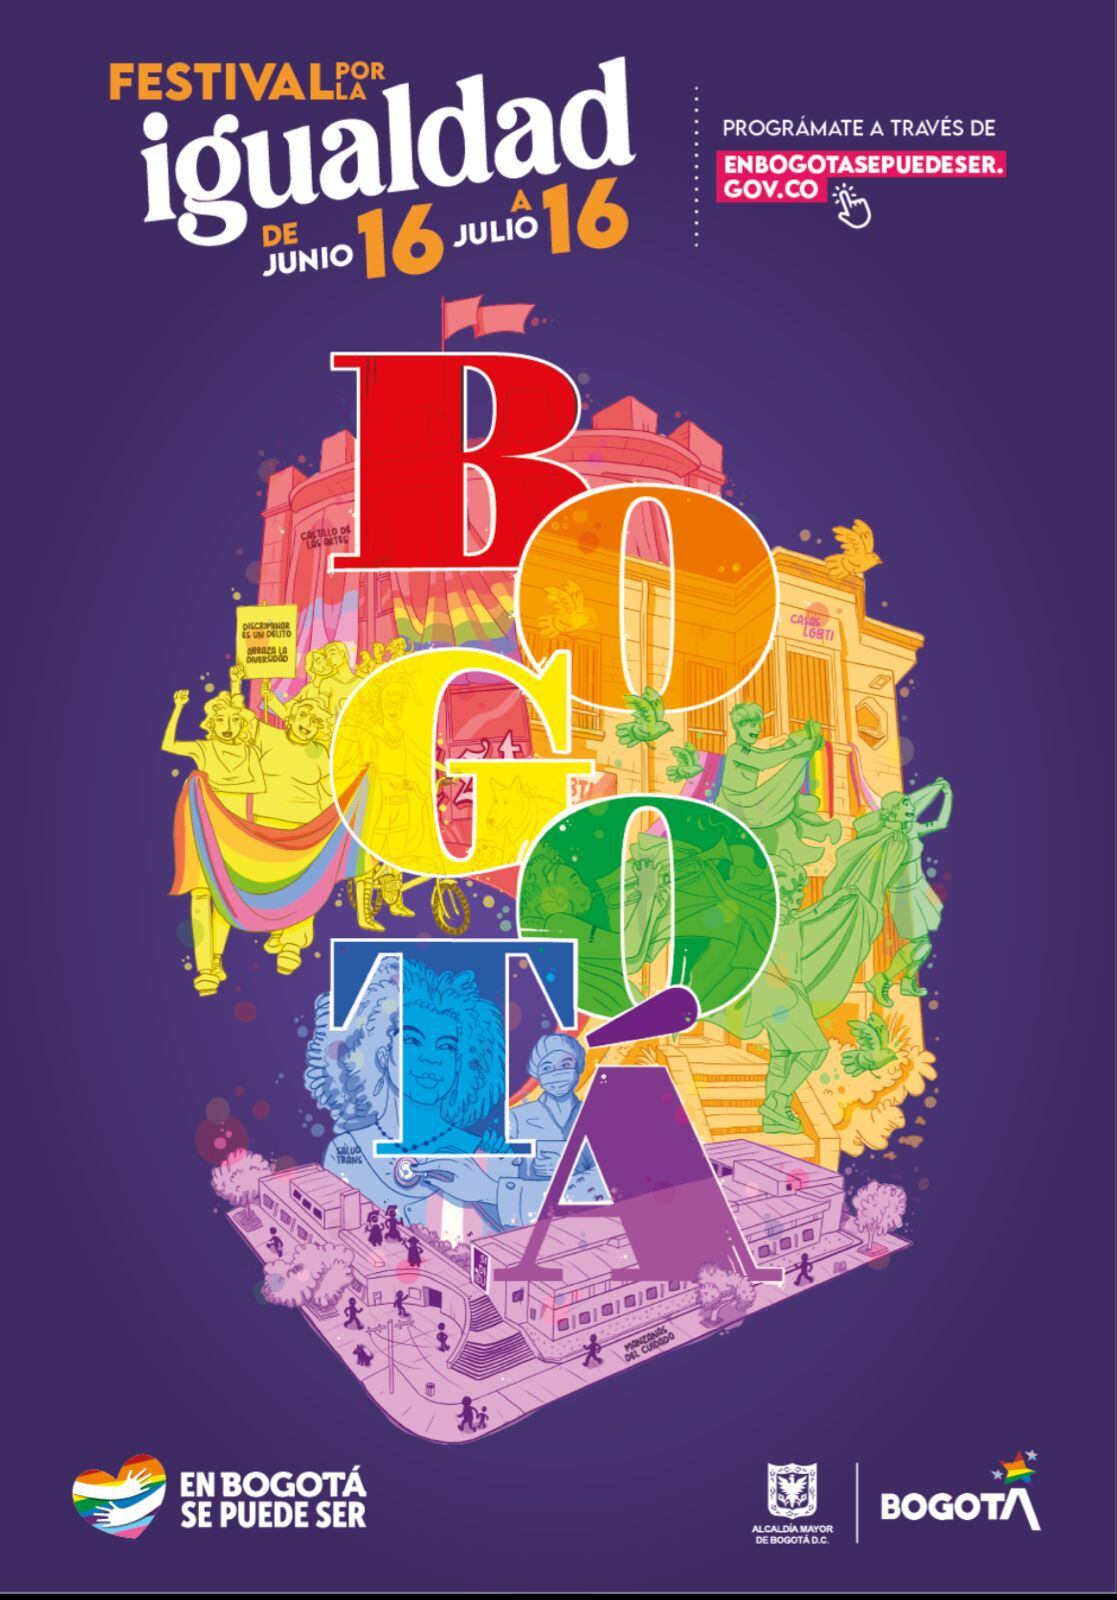 El evento se desarrollará en alianza con la Dirección de Diversidad Sexual de Bogotá, encargada de ejecutar la estrategia “En Bogotá se Puede Ser”. En Bogotá se puede ser.